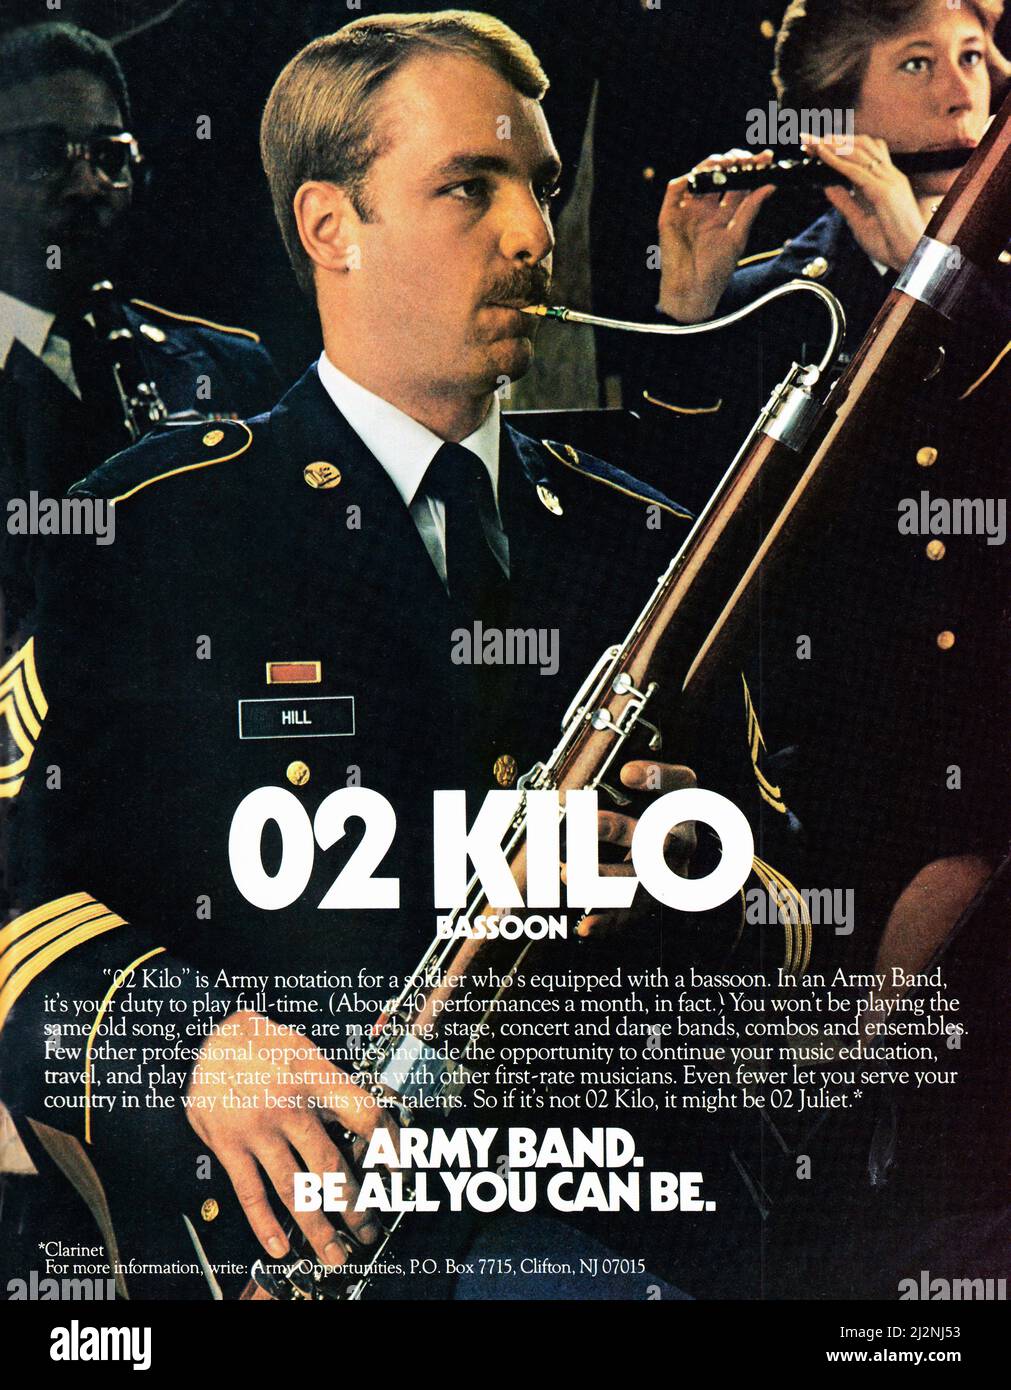 Un anuncio de página completa en una revista de música estadounidense de 1984 que anima a los músicos a unirse al Ejército de los Estados Unidos. Foto de stock